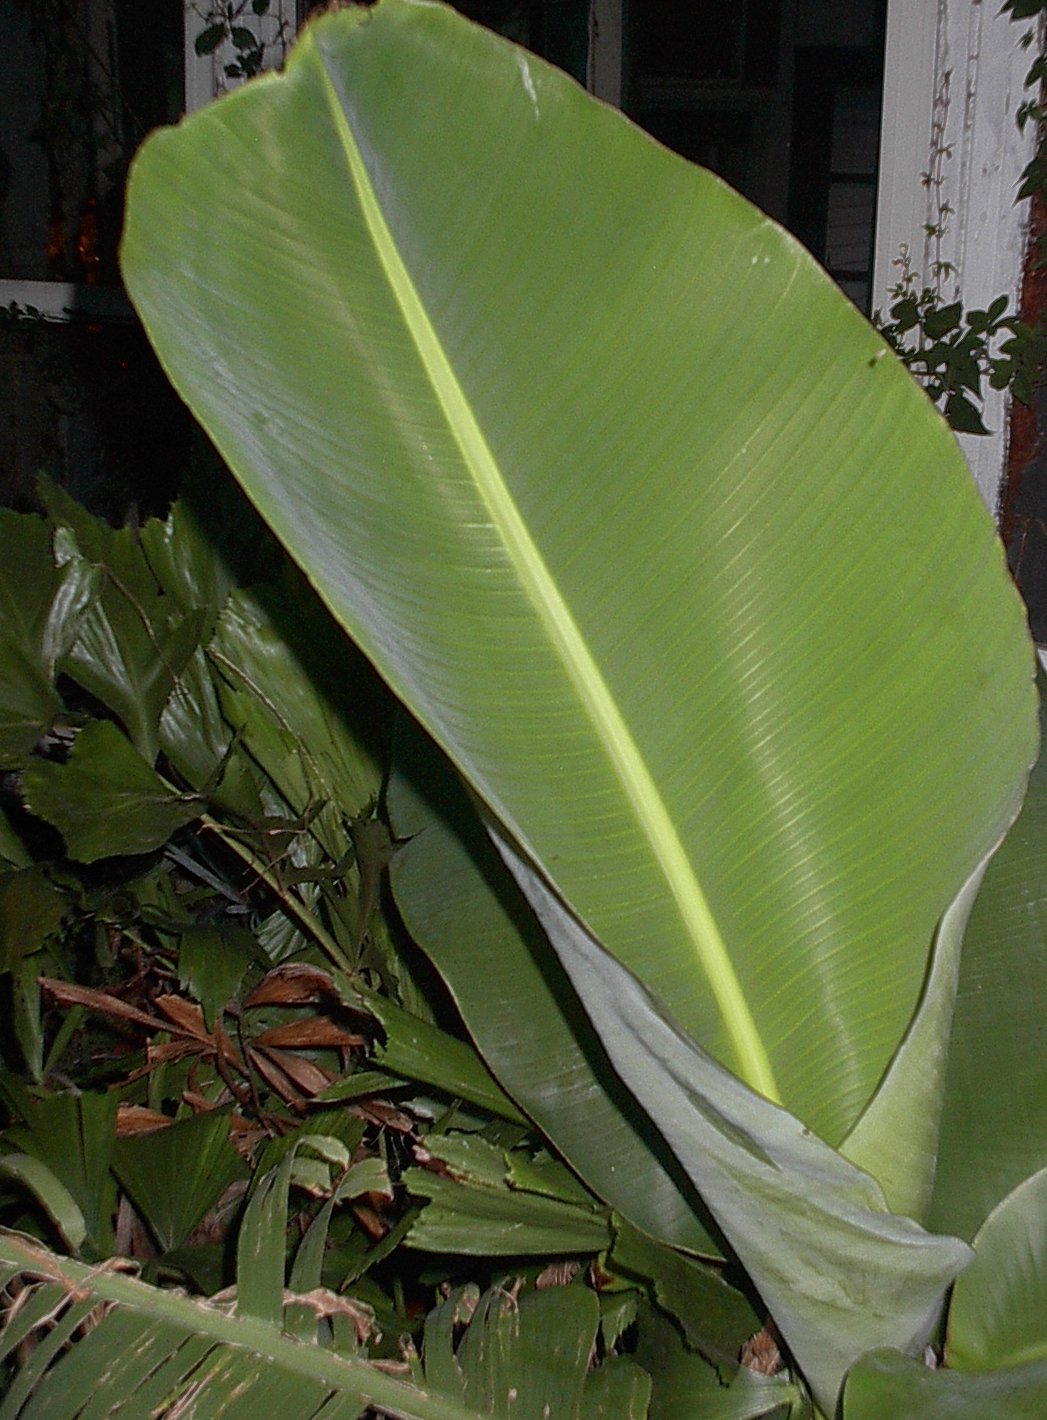 Banana leaf - Wikipedia